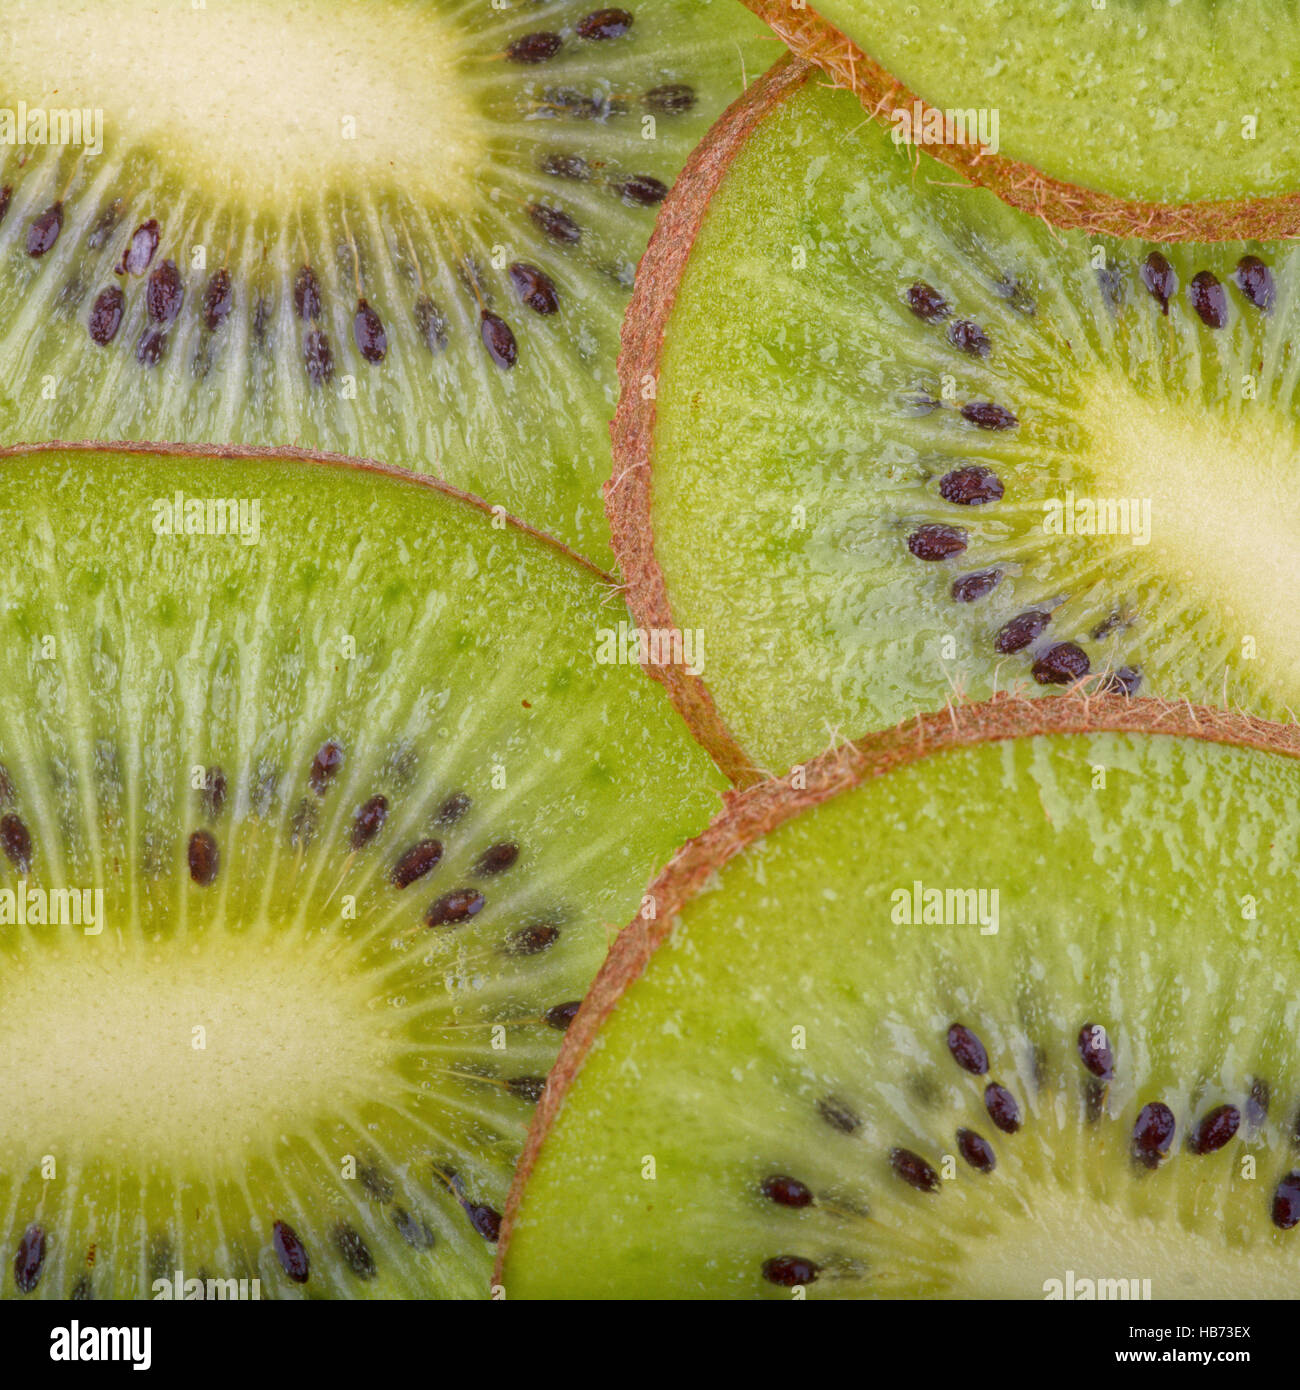 Bella kiwi fette di frutta Foto Stock